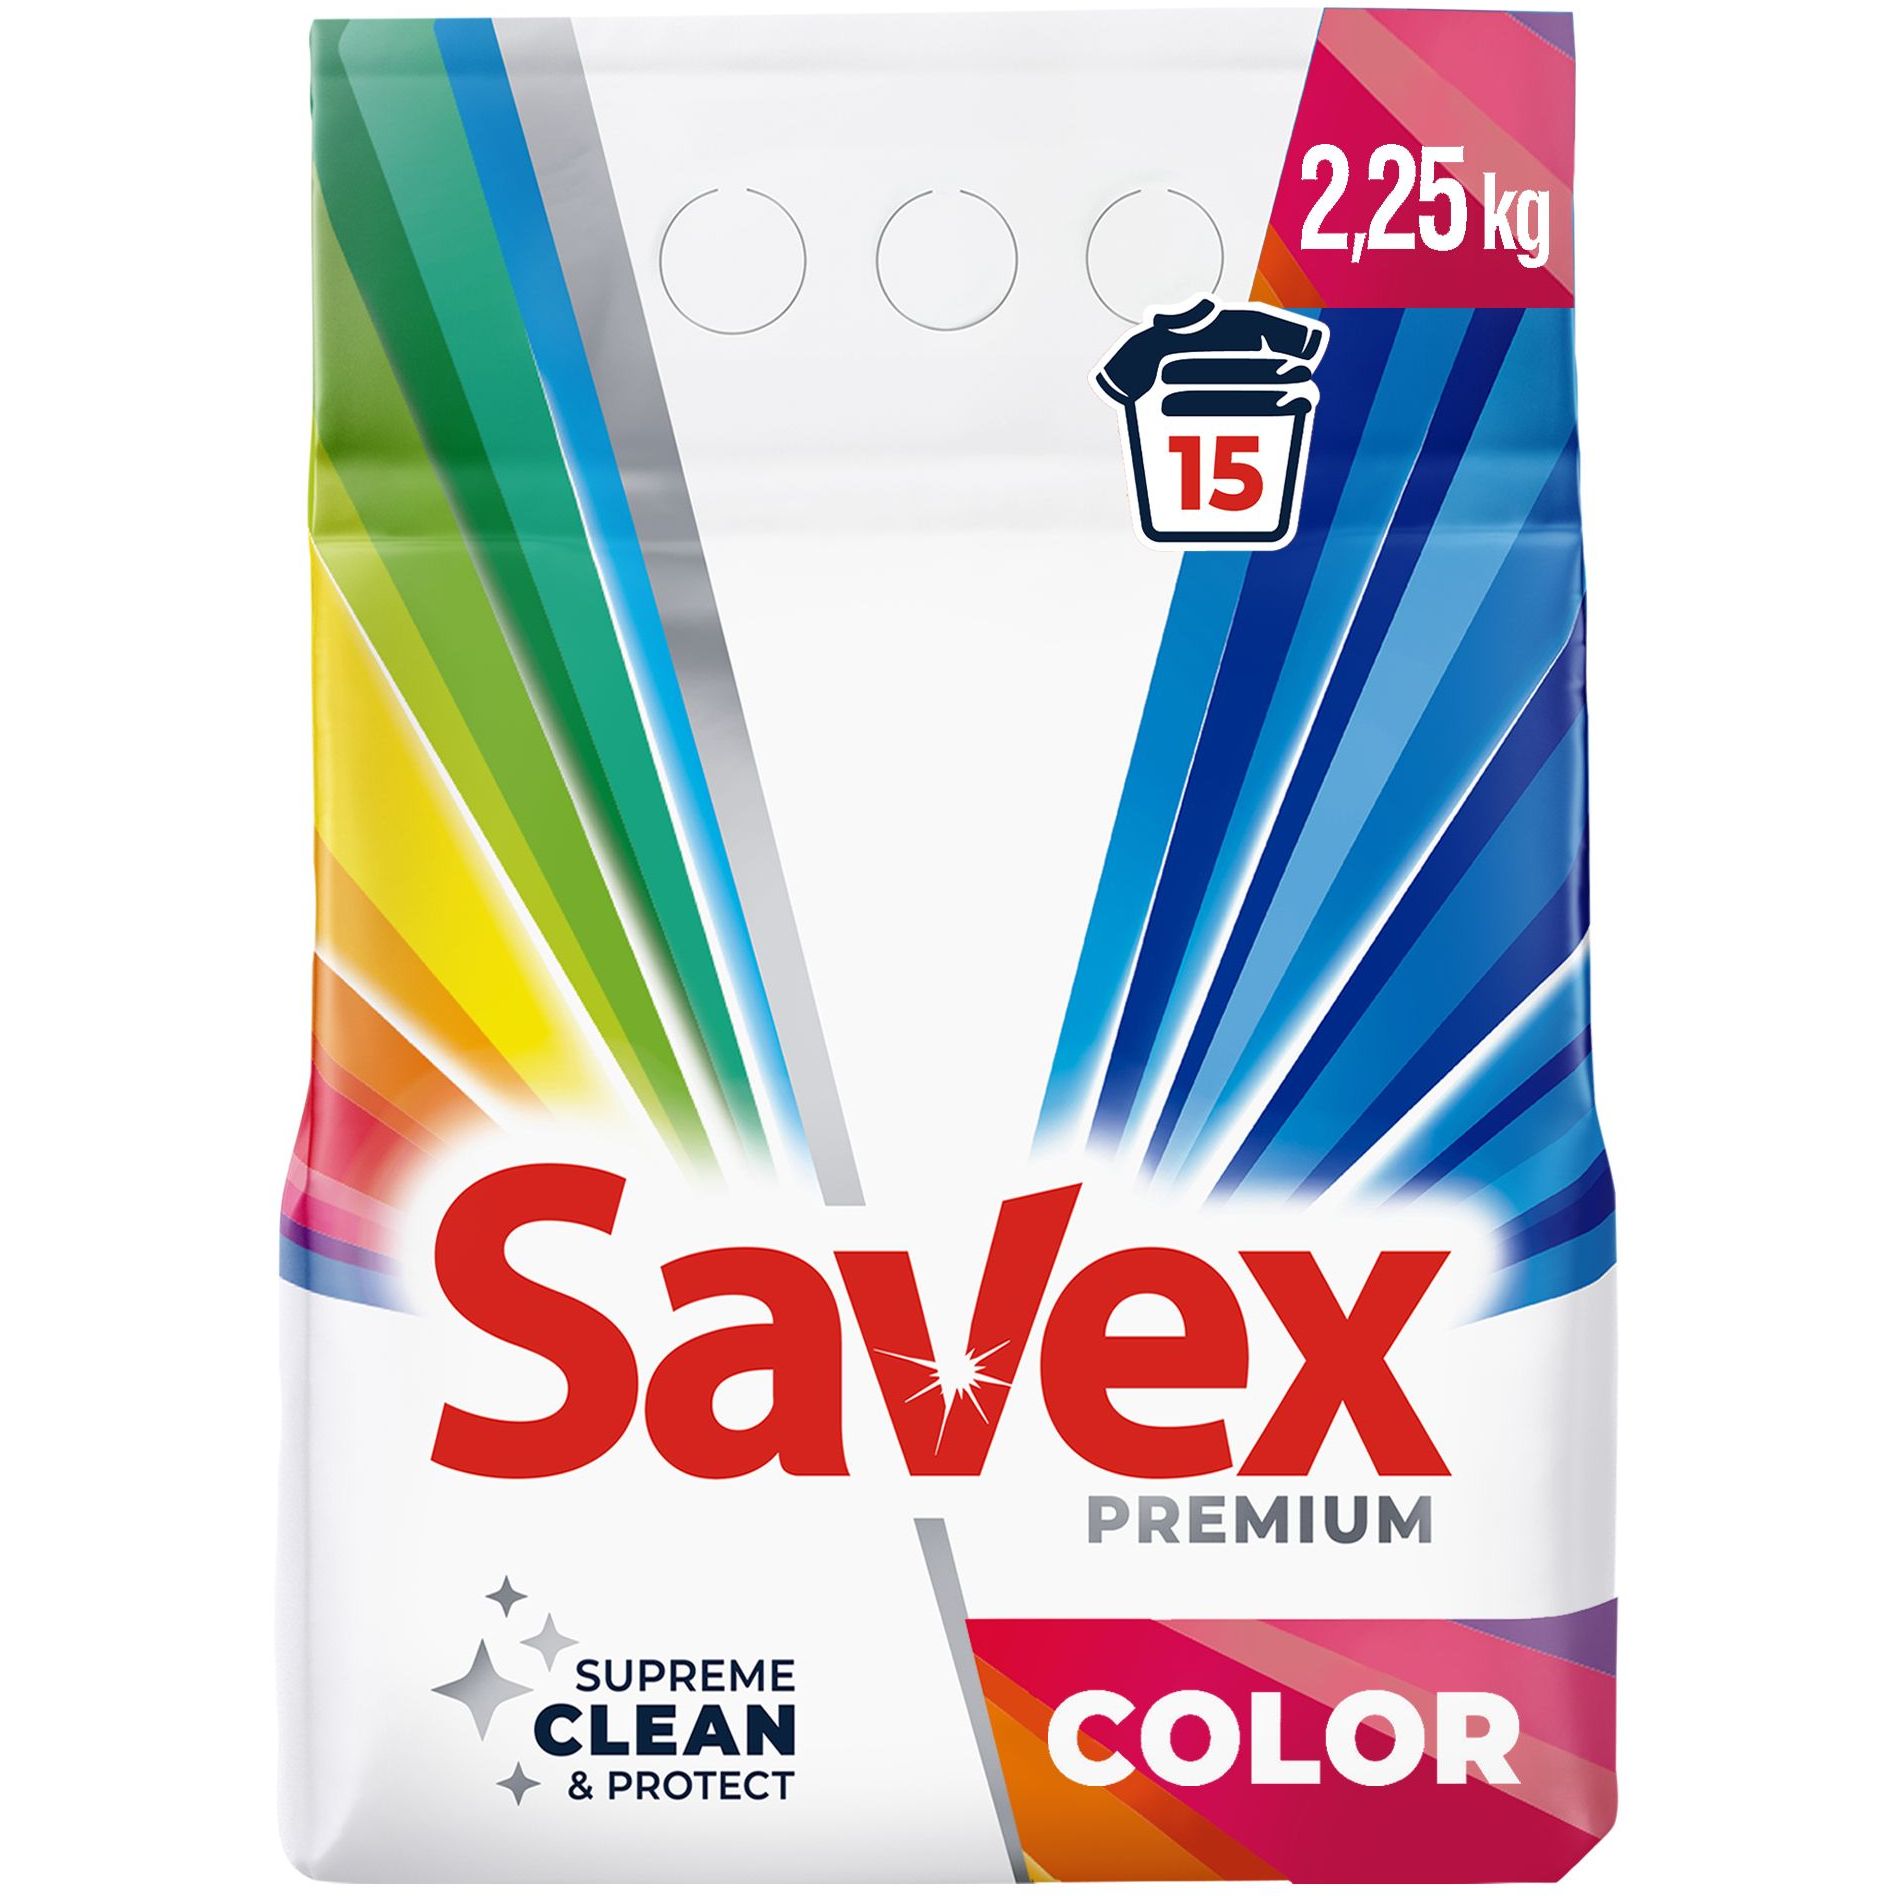 Стиральный порошок Savex Premium Color, 2,25 кг - фото 1